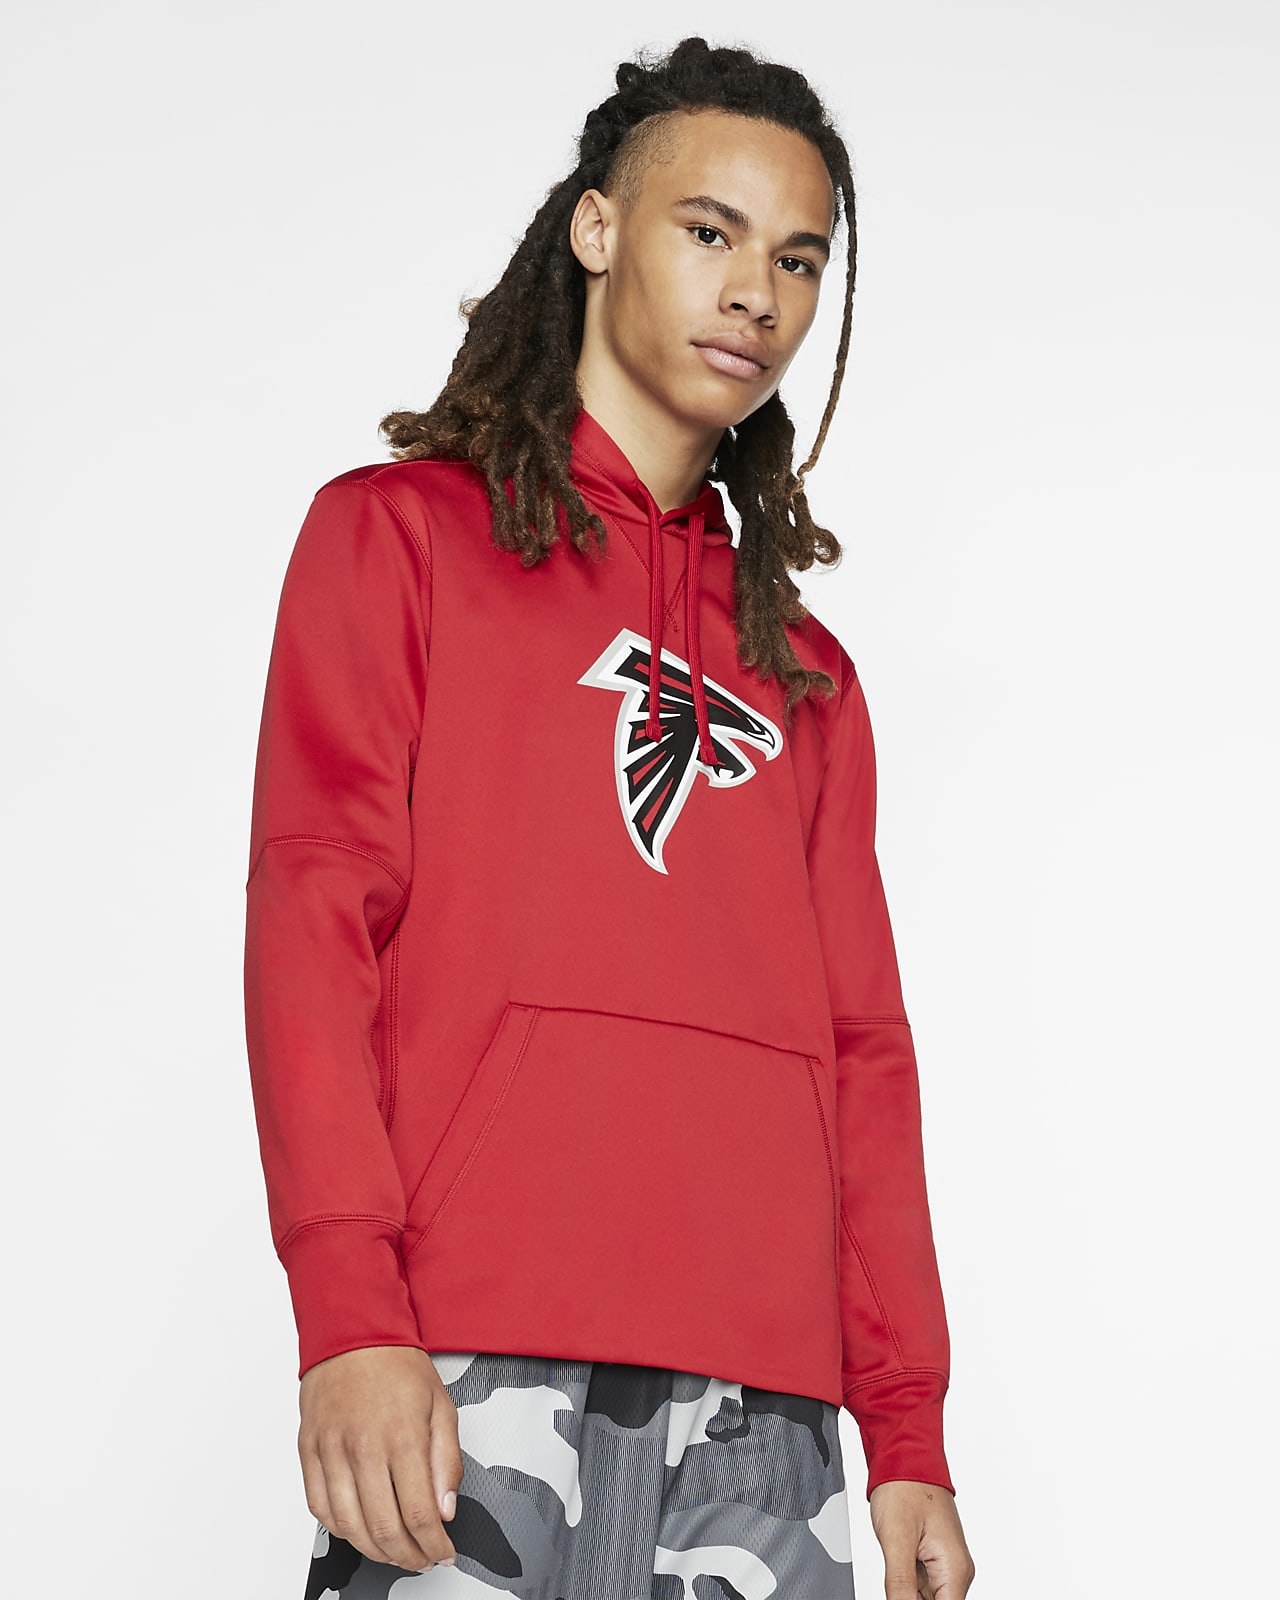 Nike Dri-FIT (NFL Falcons) Men's Hoodie 